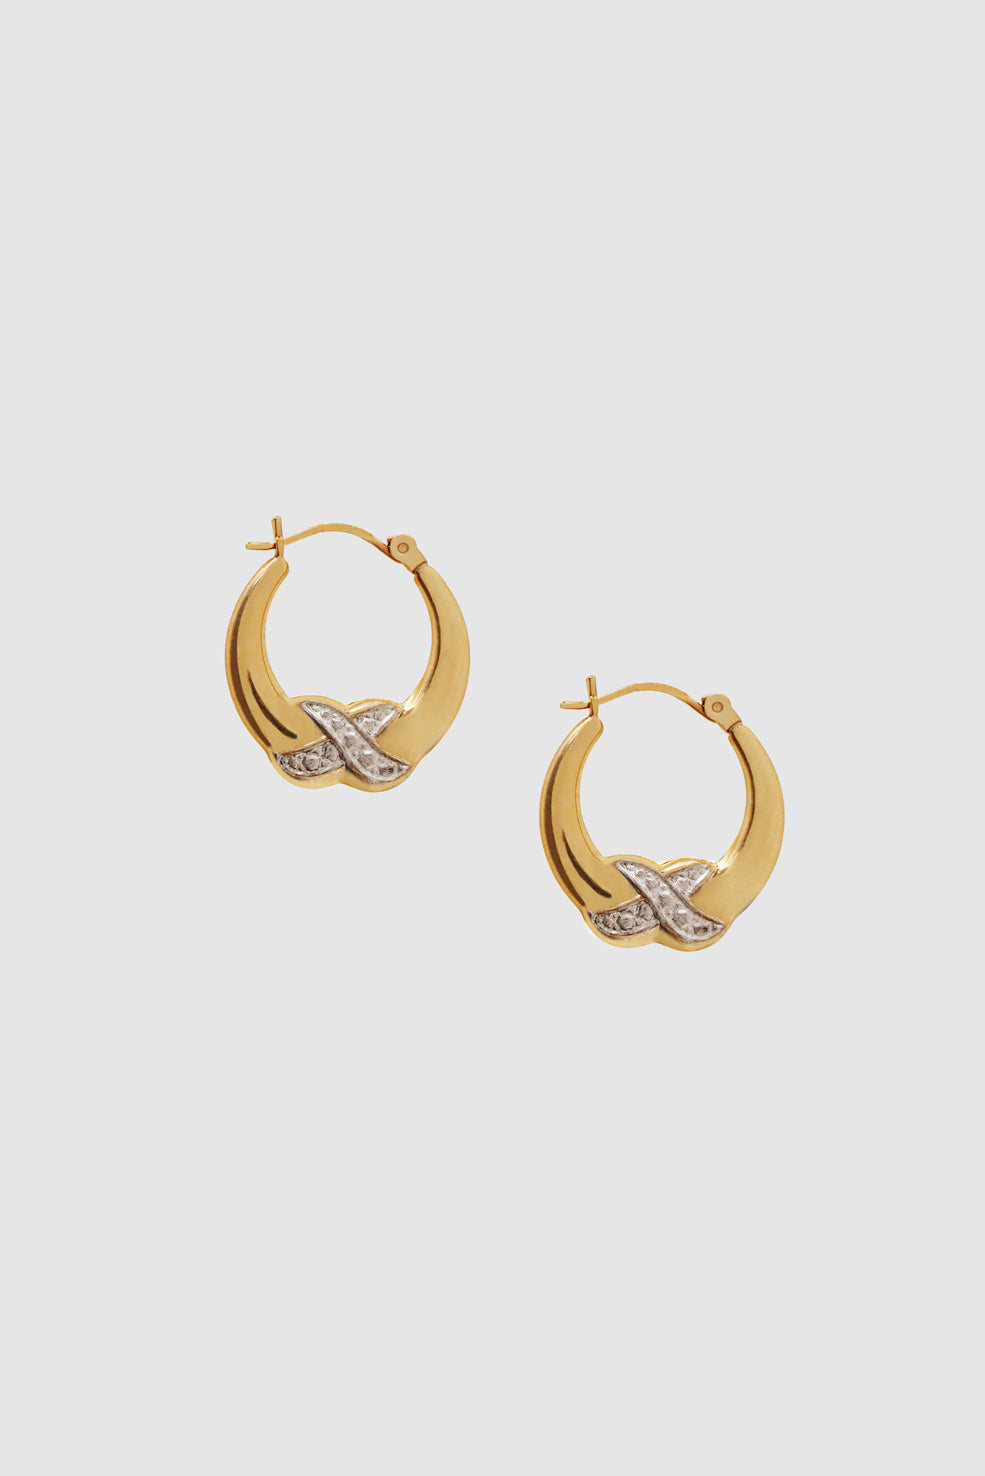 ANINE BING Diamond Cross Hoop Earrings - 14k Gold - Front View